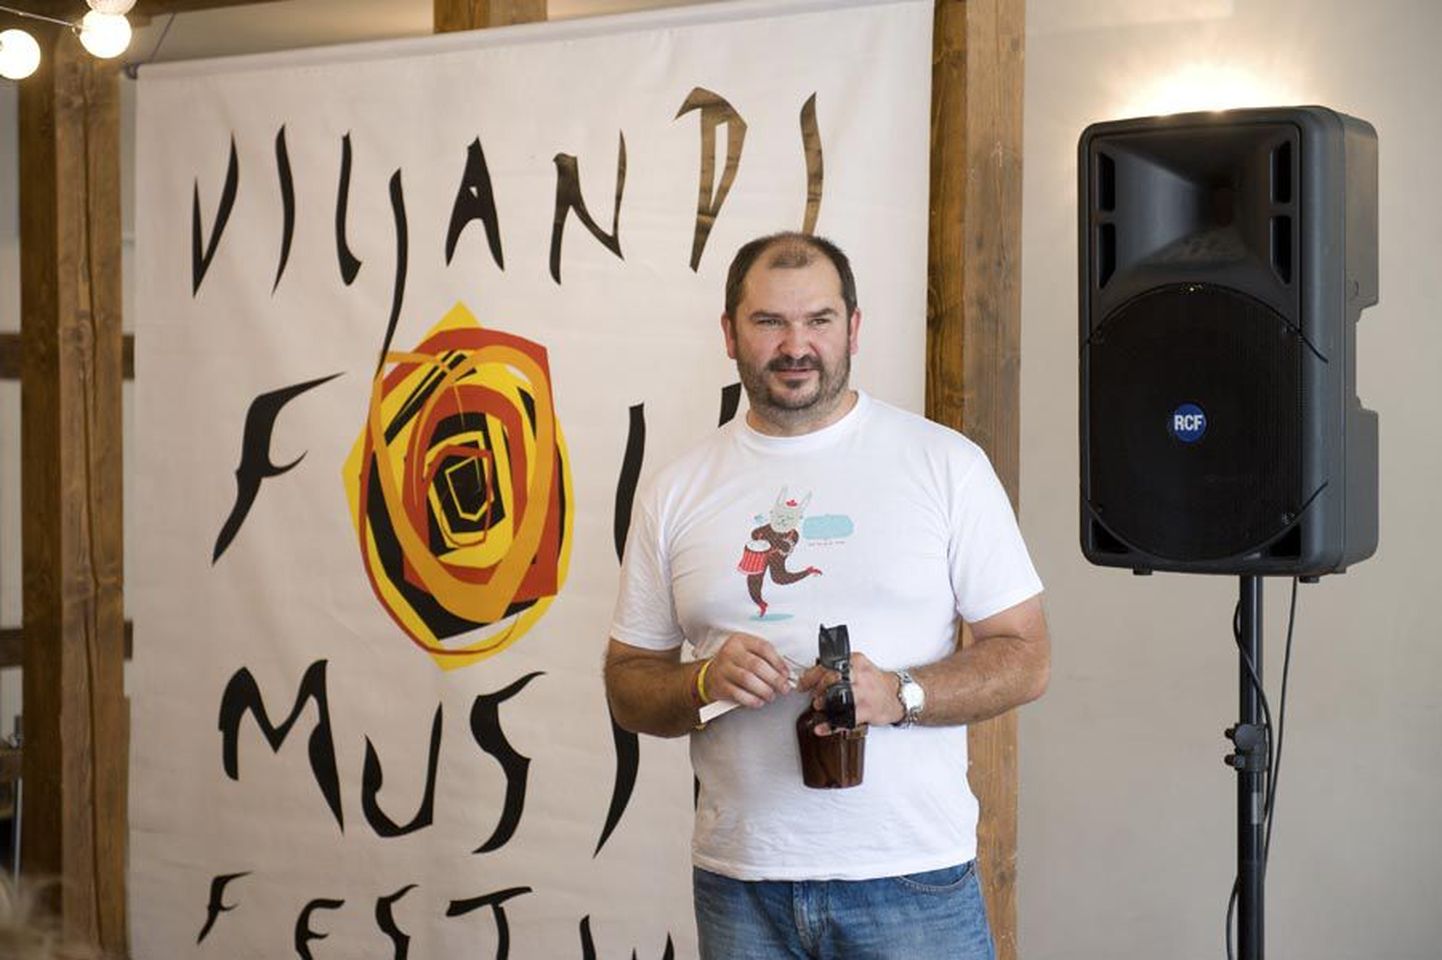 Kaubamärgi Viljandi Folk Music Festival omanikuks saanud Ando Kiviberg on lubanud, et annab kaubamärgi kohe pärast registreerimist üle festivali korraldavale mittetulundusühingule.